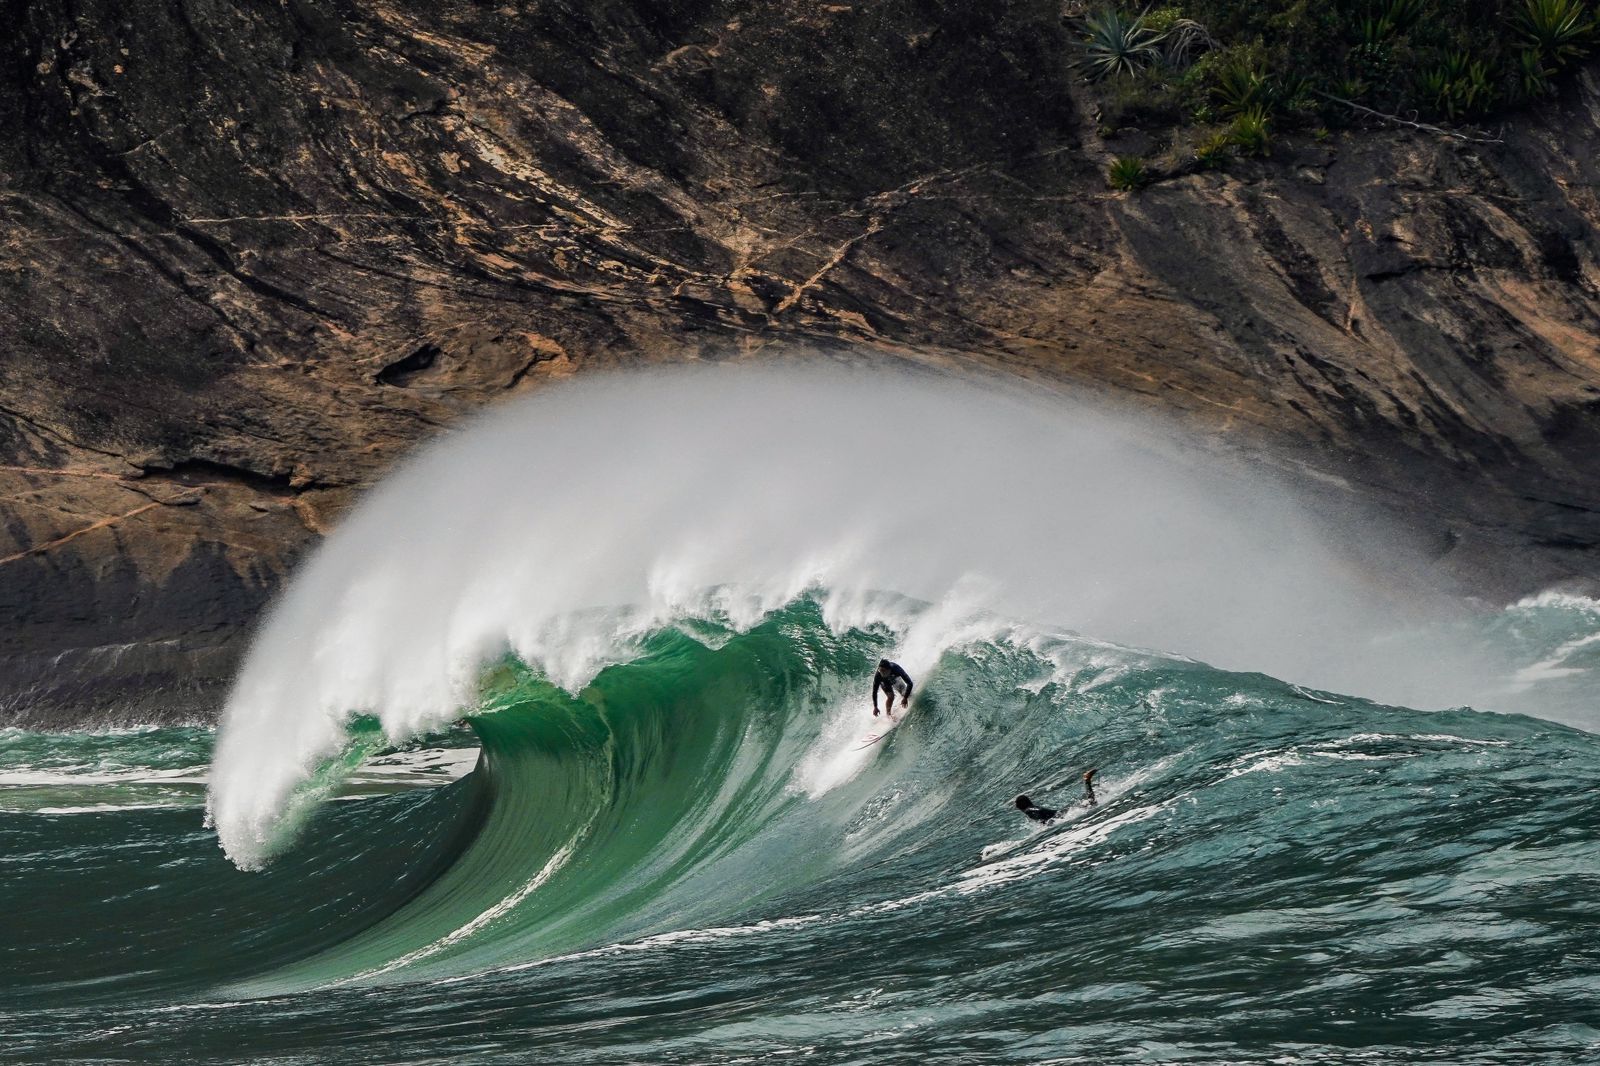 Otro campeonato de surf se realizará en Itacoatiara este fin de semana – A Seguir Niterói